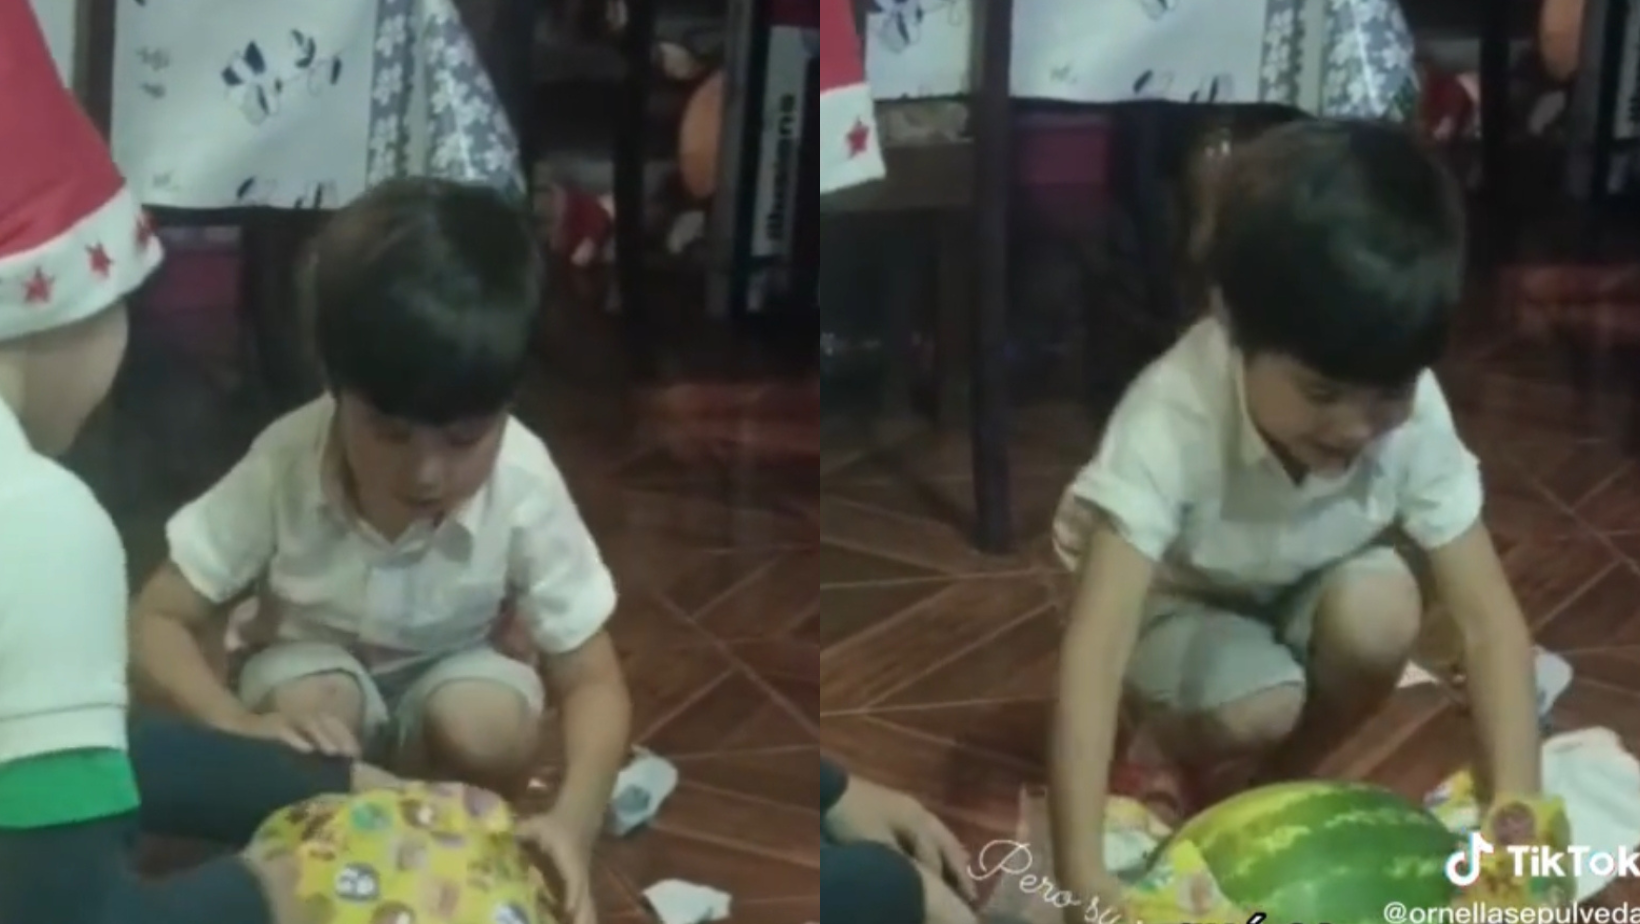 [VIDEO] “¡Gracias Santa!”, niño recibió una sandía como regalo de Navidad